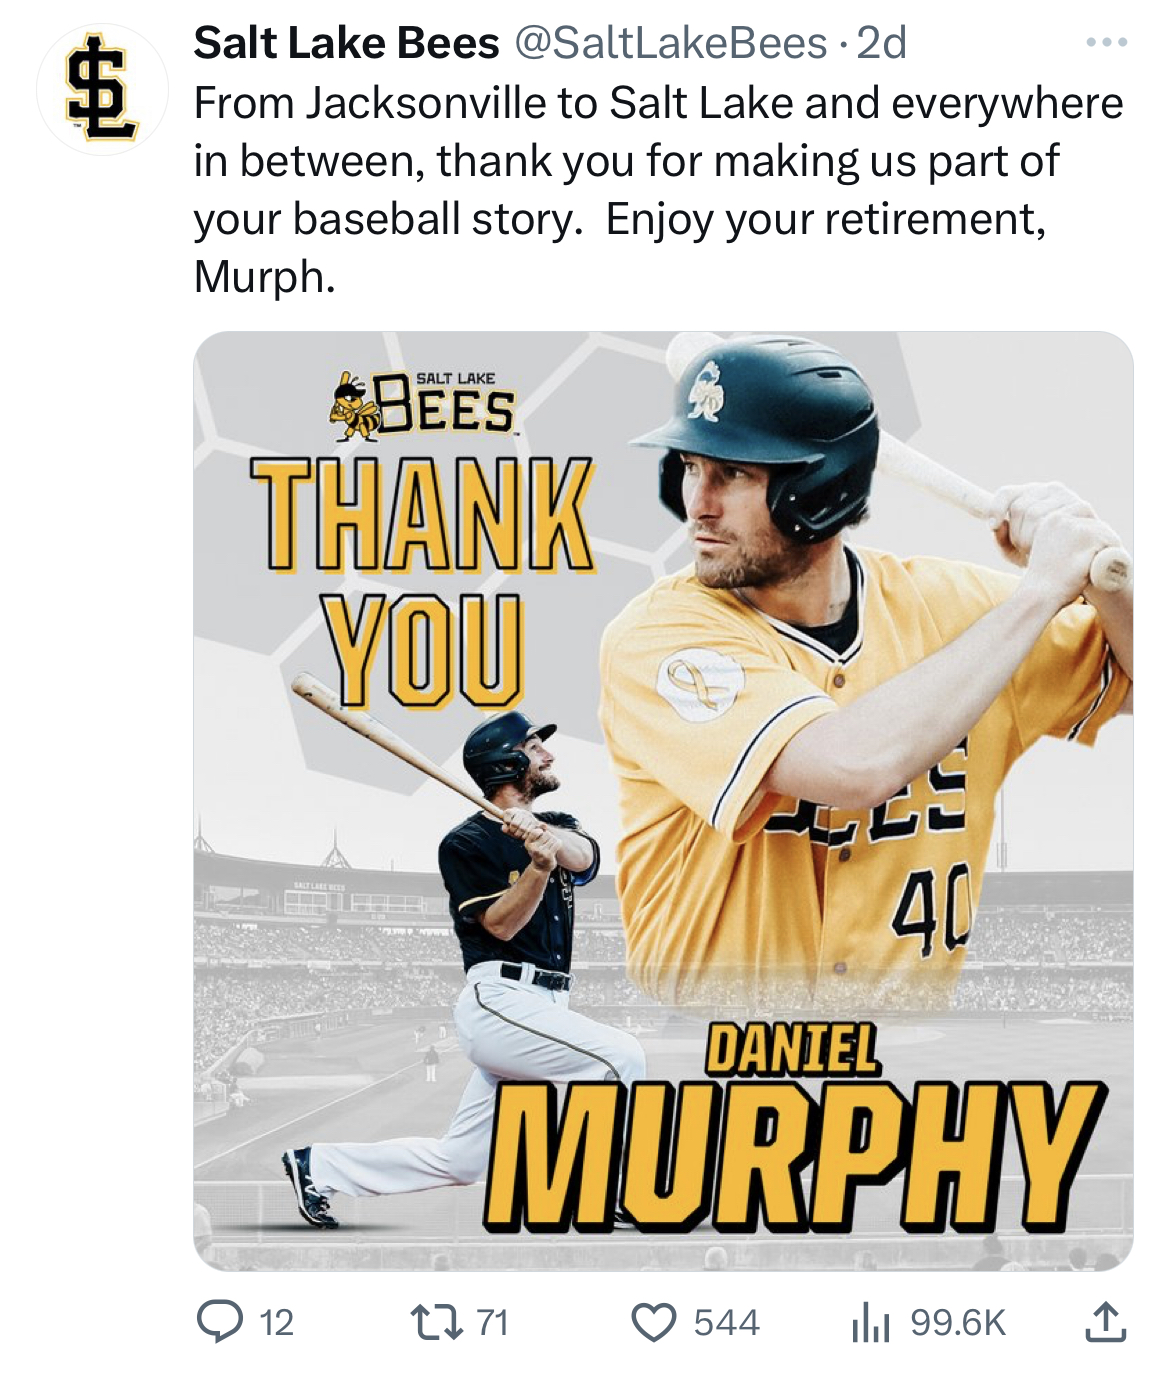 Daniel Murphy retires